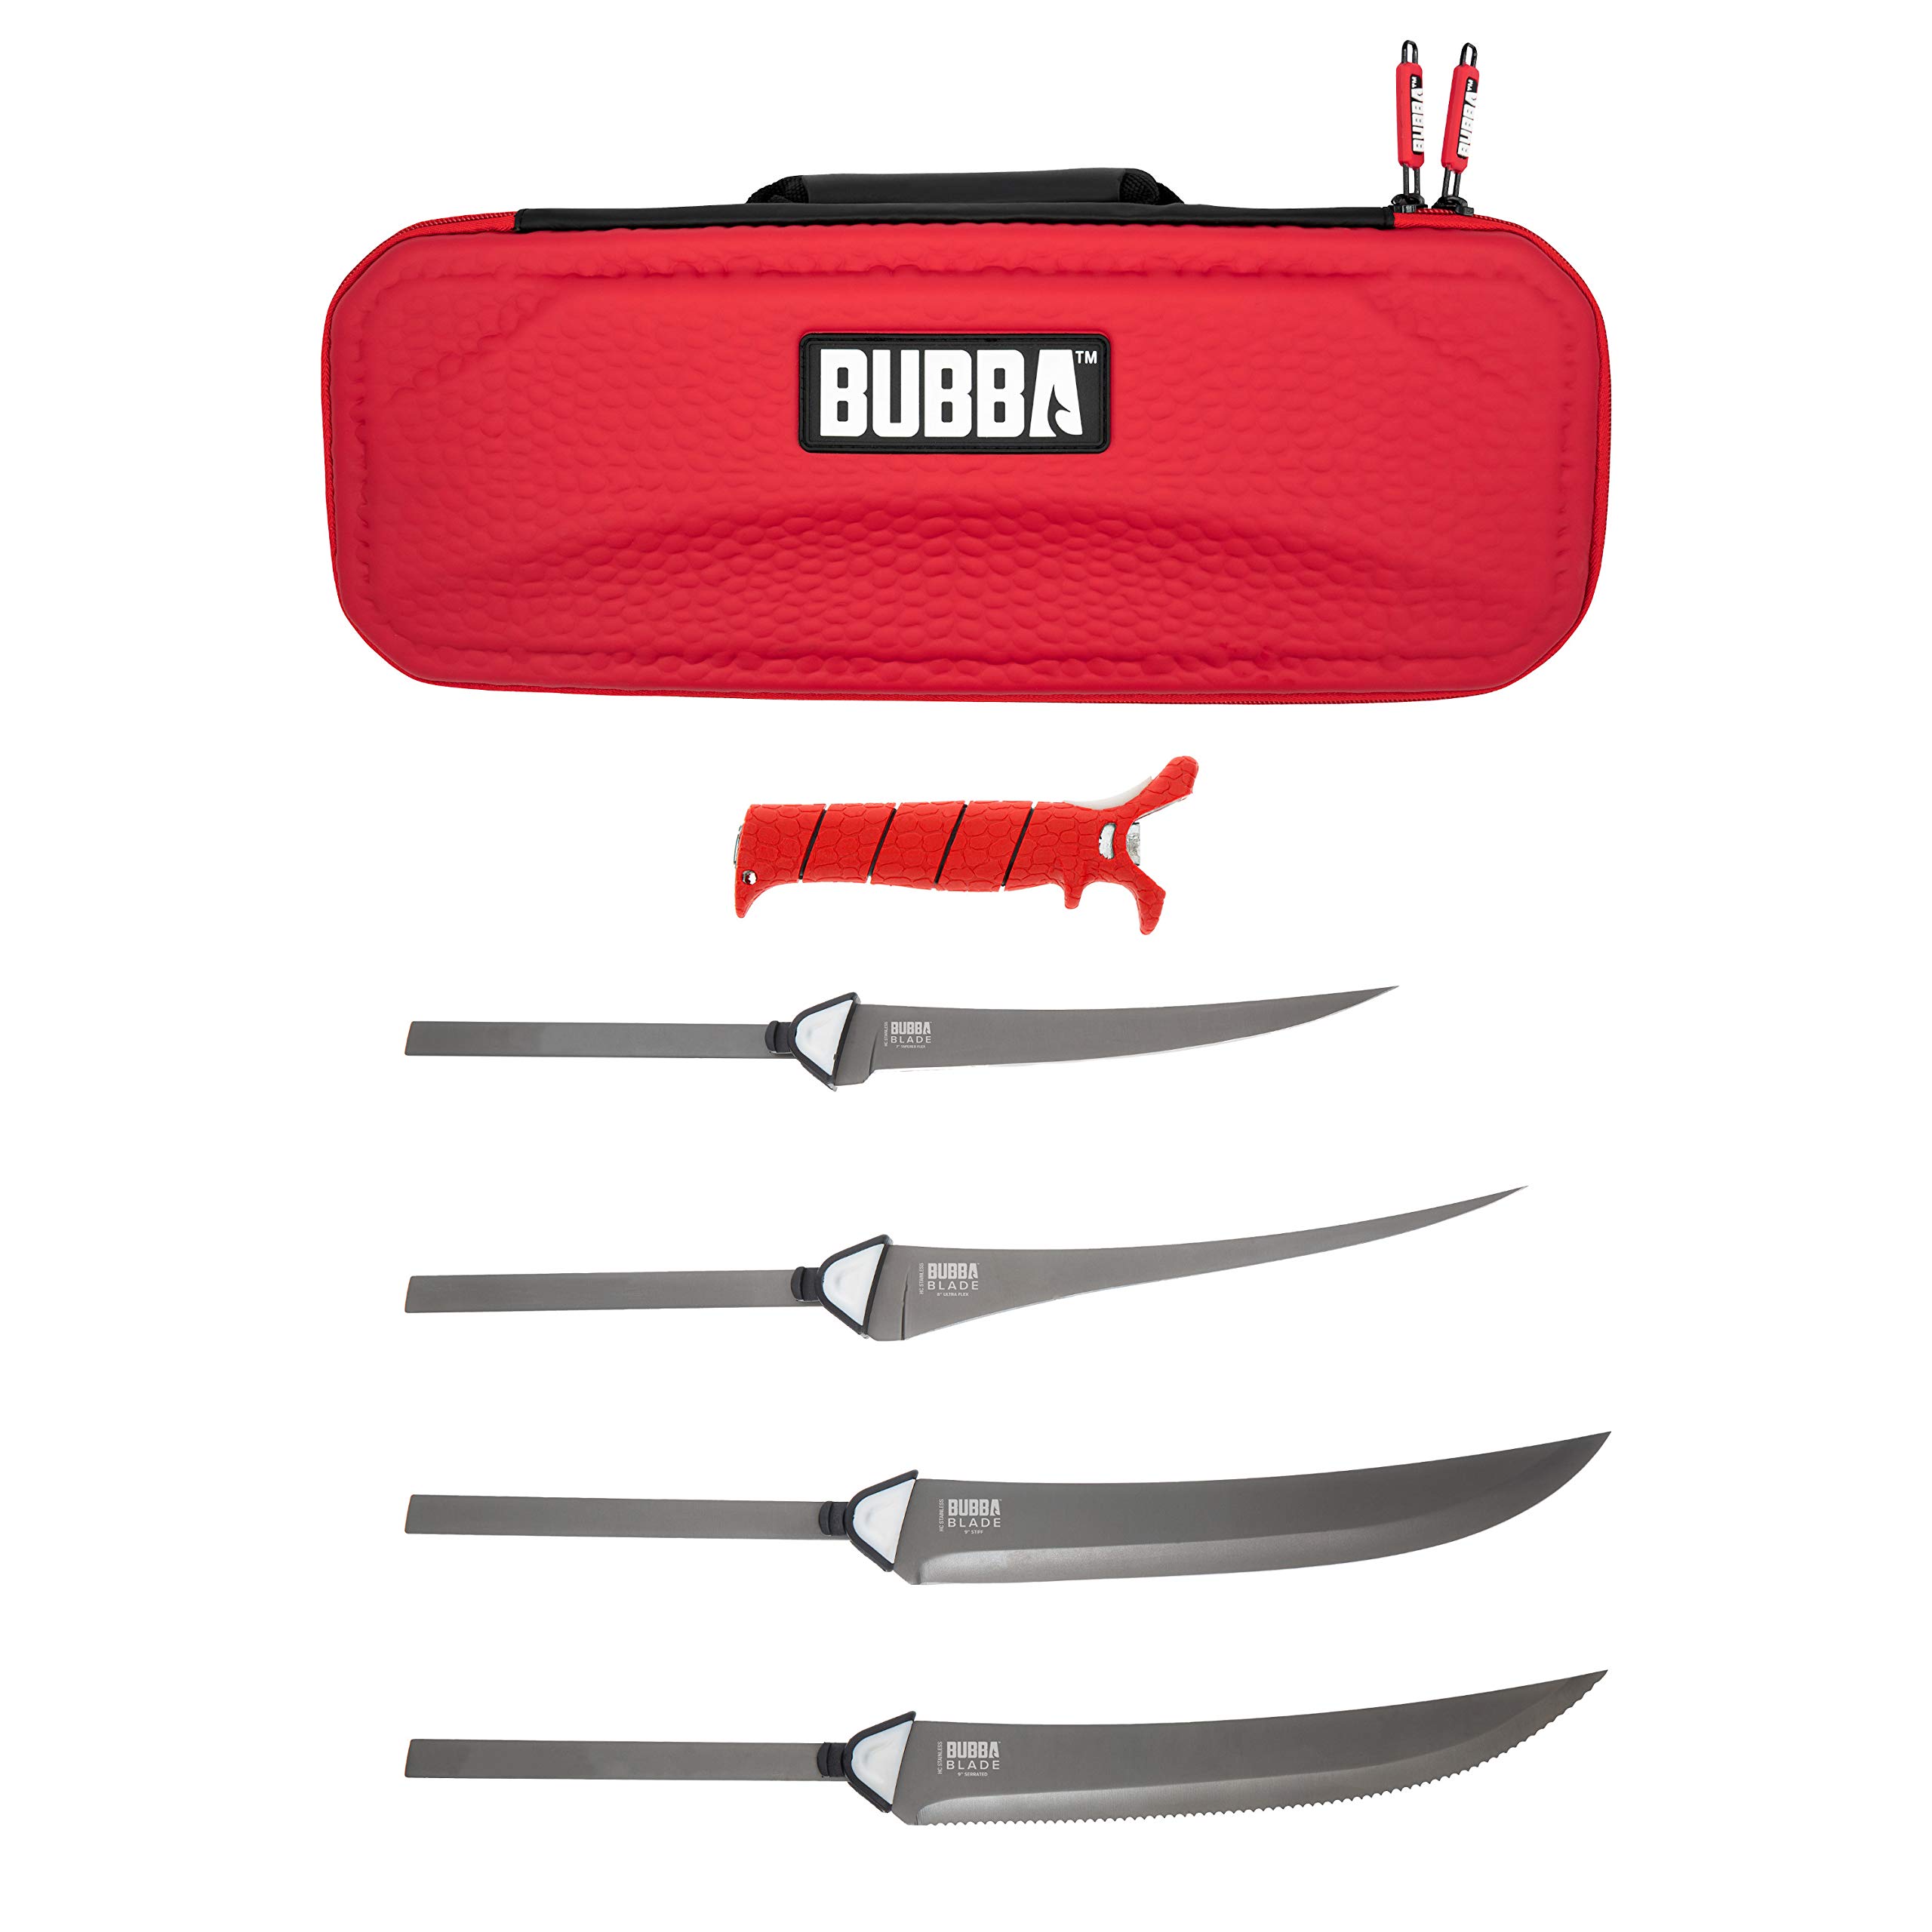 BUBBA Multi-Flex Interchangeable Blade Kits, with Non-Slip Grip Handle,  Ti-Nitride S.S. Coated Non